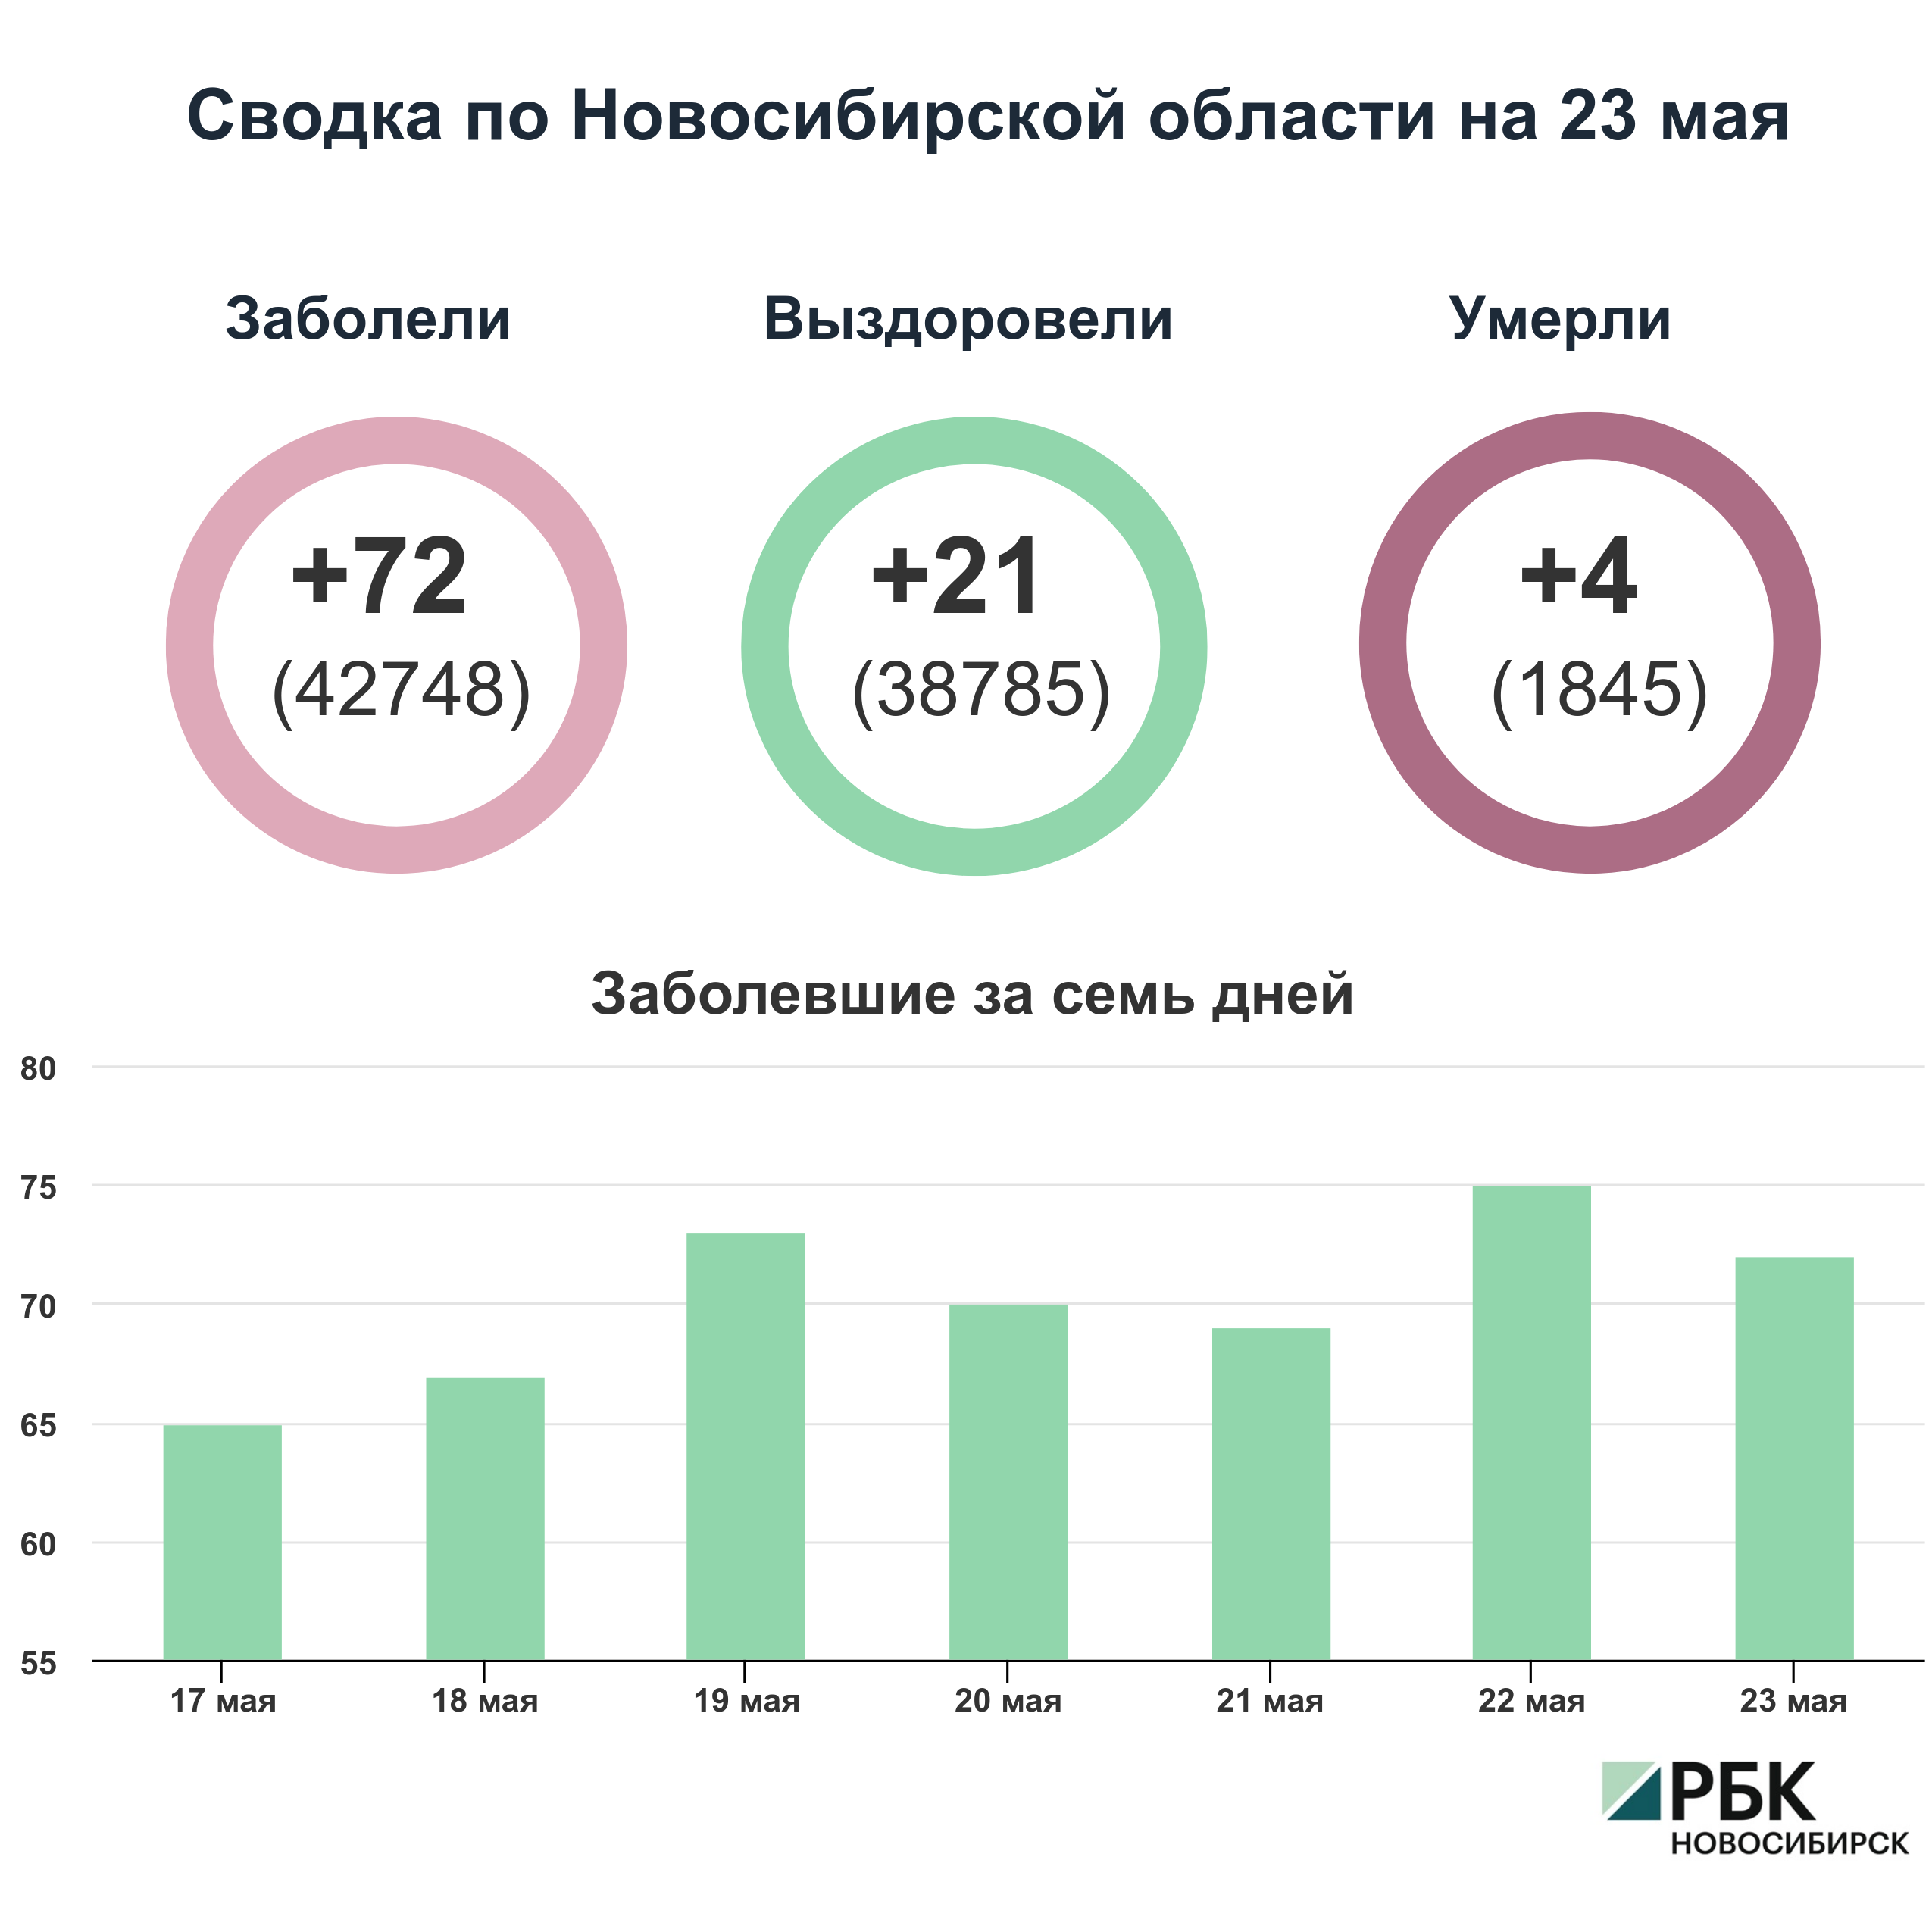 Коронавирус в Новосибирске: сводка на 23 мая